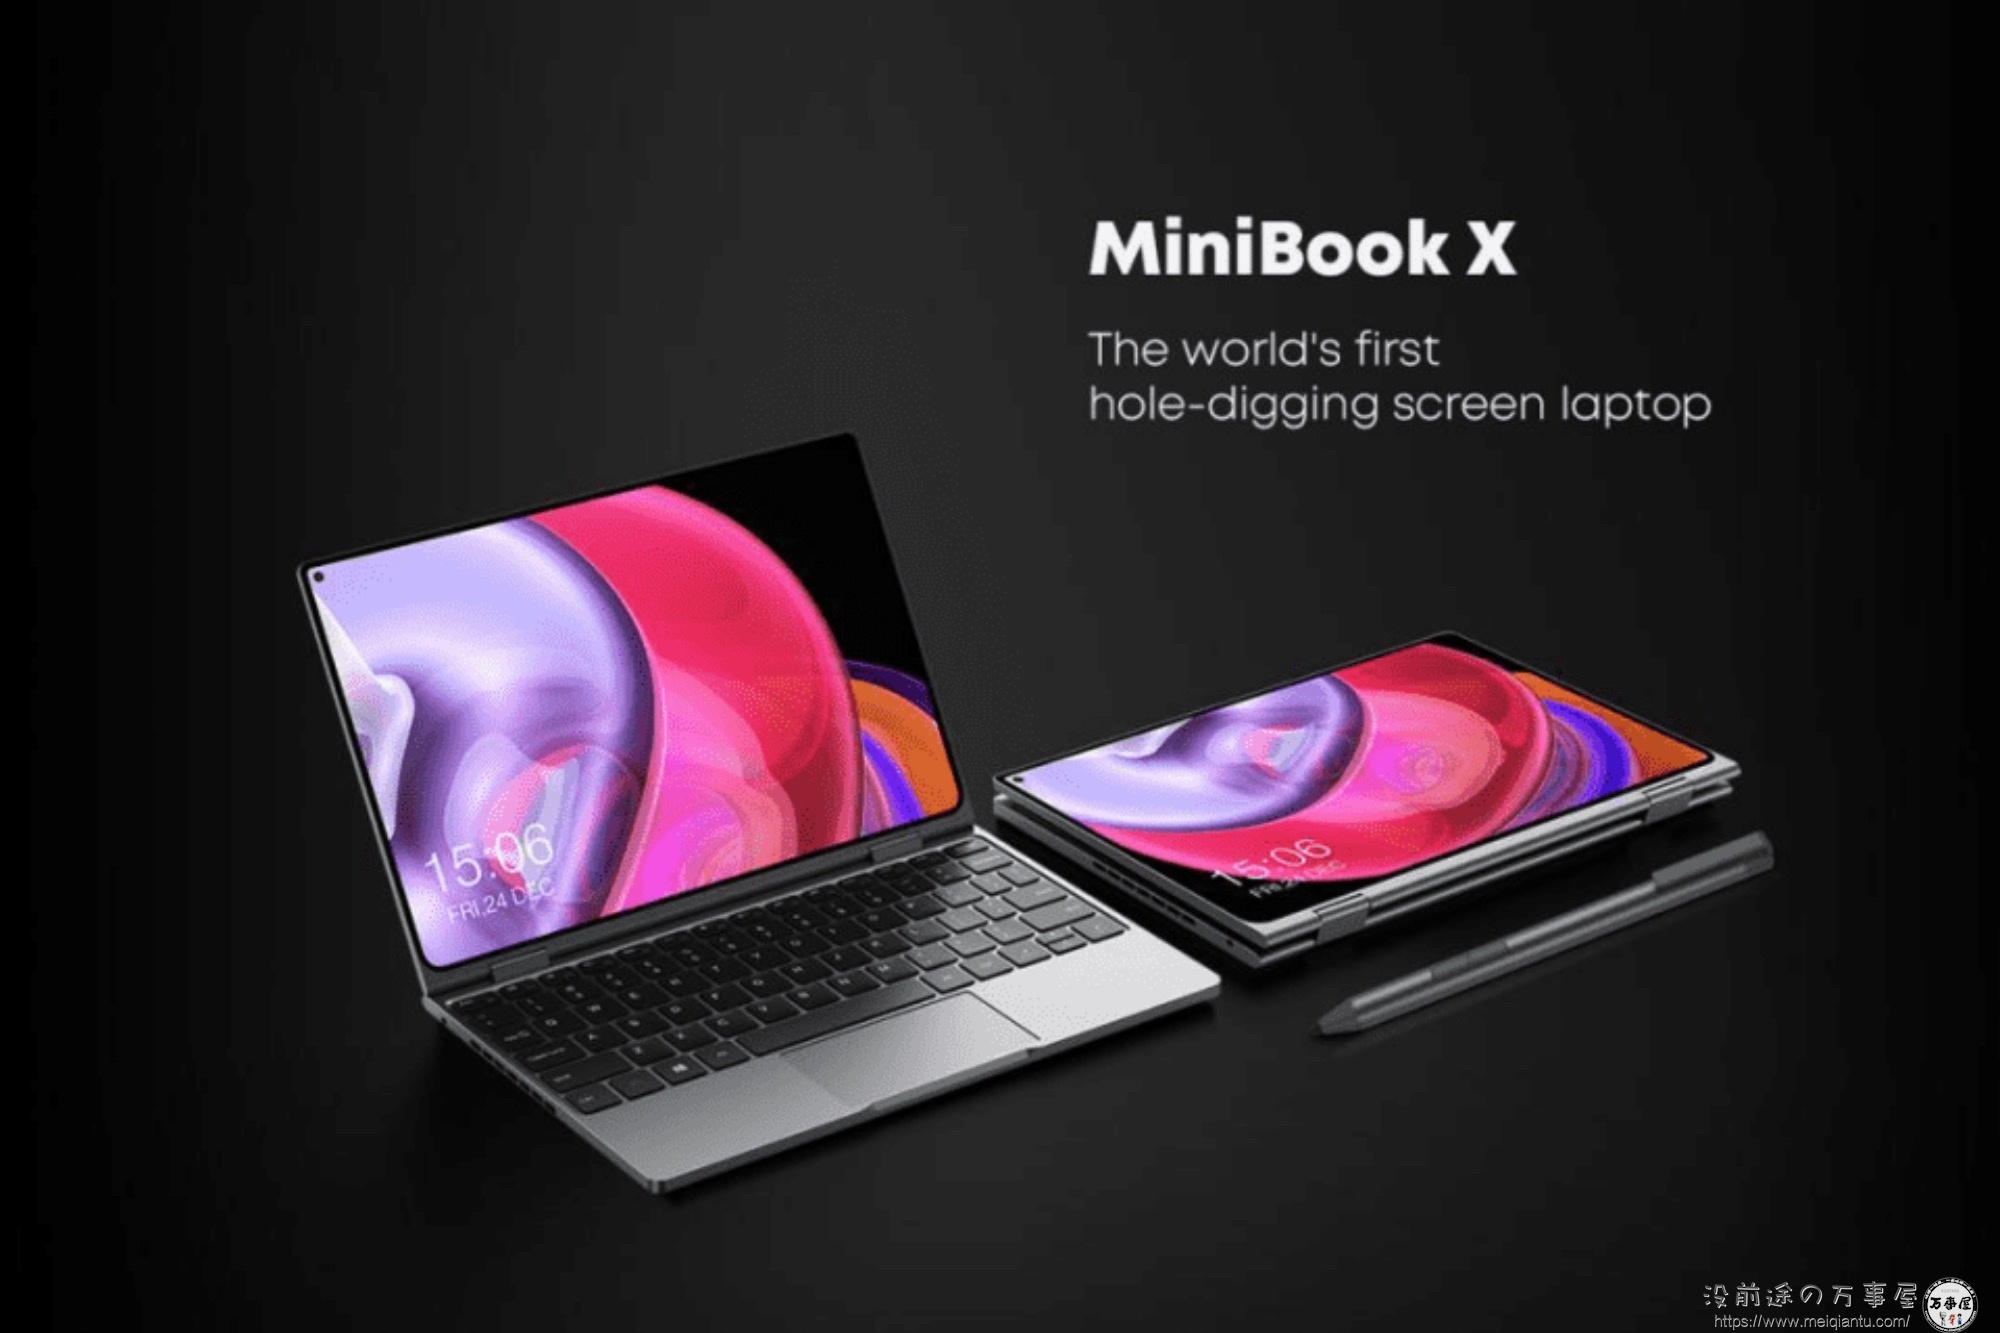 苹果还真是引流潮流的No.1！Macbook Pro刘海屏之后，驰为发布了一款挖孔屏翻转本“MiniBook X”-1